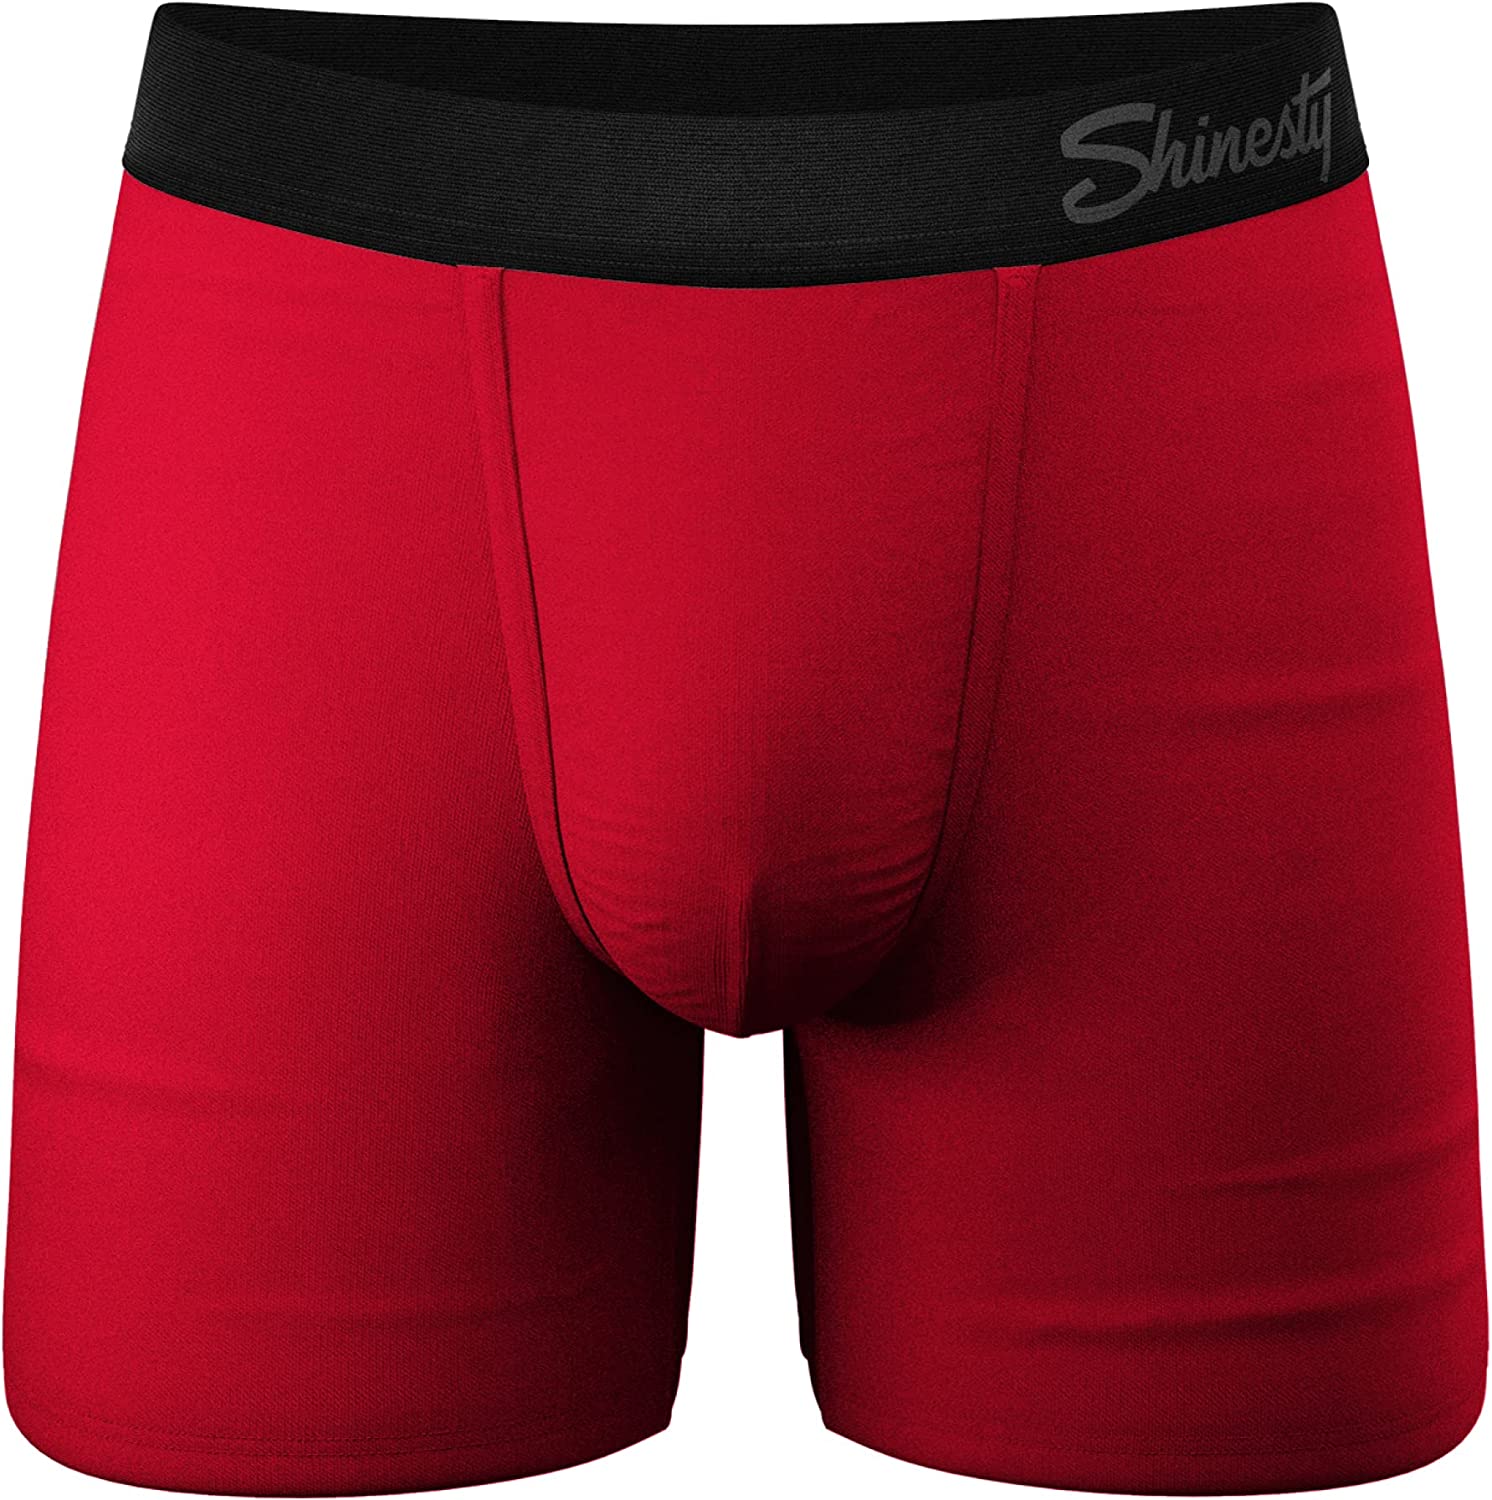 Shinesty Hammock Support Pouch Underwear For Men Mens Underwear Boxer Briefs